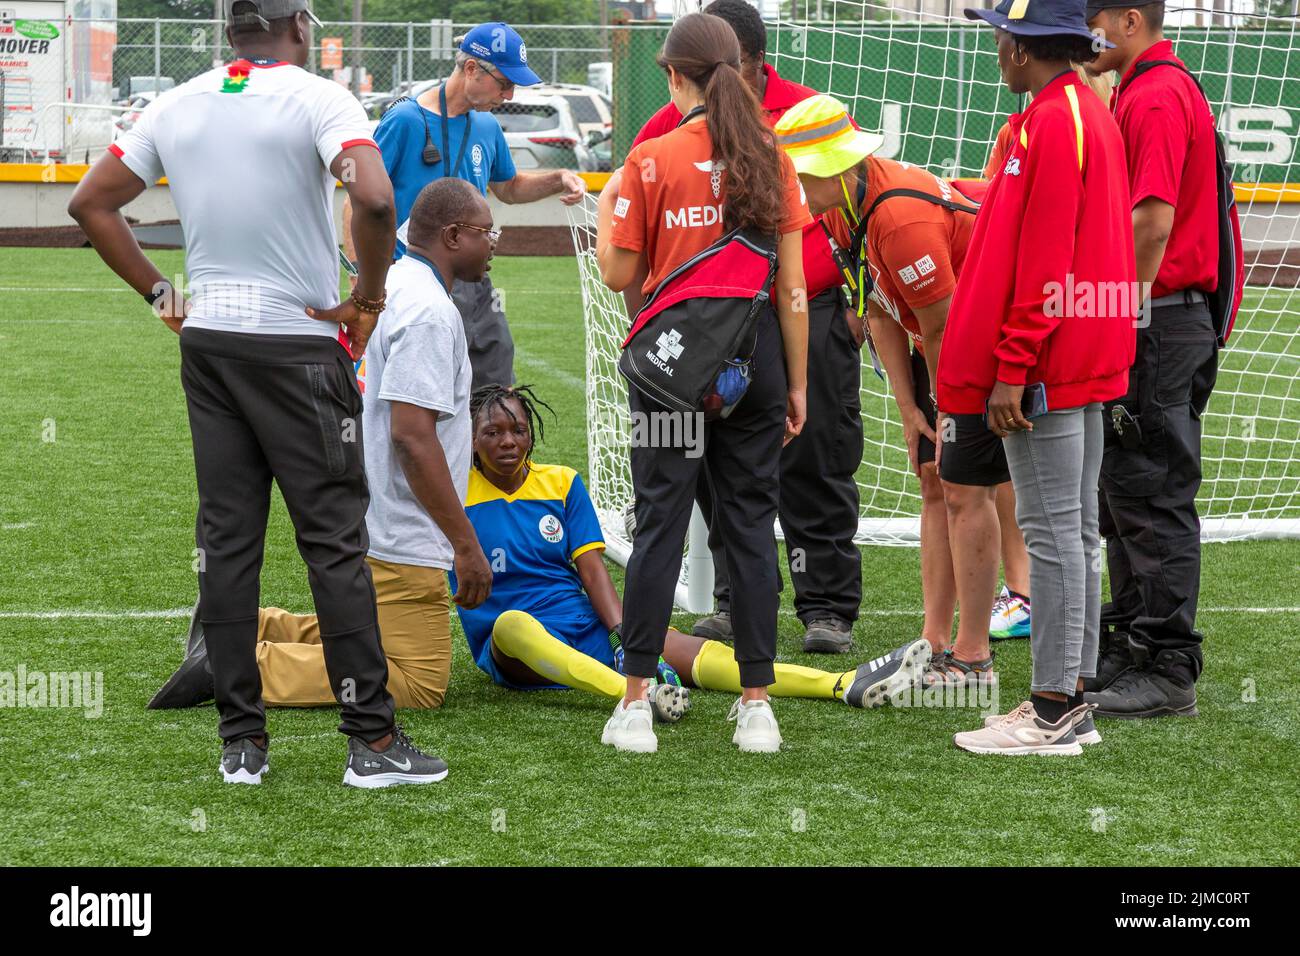 Detroit, Michigan - le personnel médical assiste à un joueur blessé pendant le tournoi de football (soccer) de la coupe unifiée des Jeux Olympiques spéciaux. La coupe unifiée p Banque D'Images